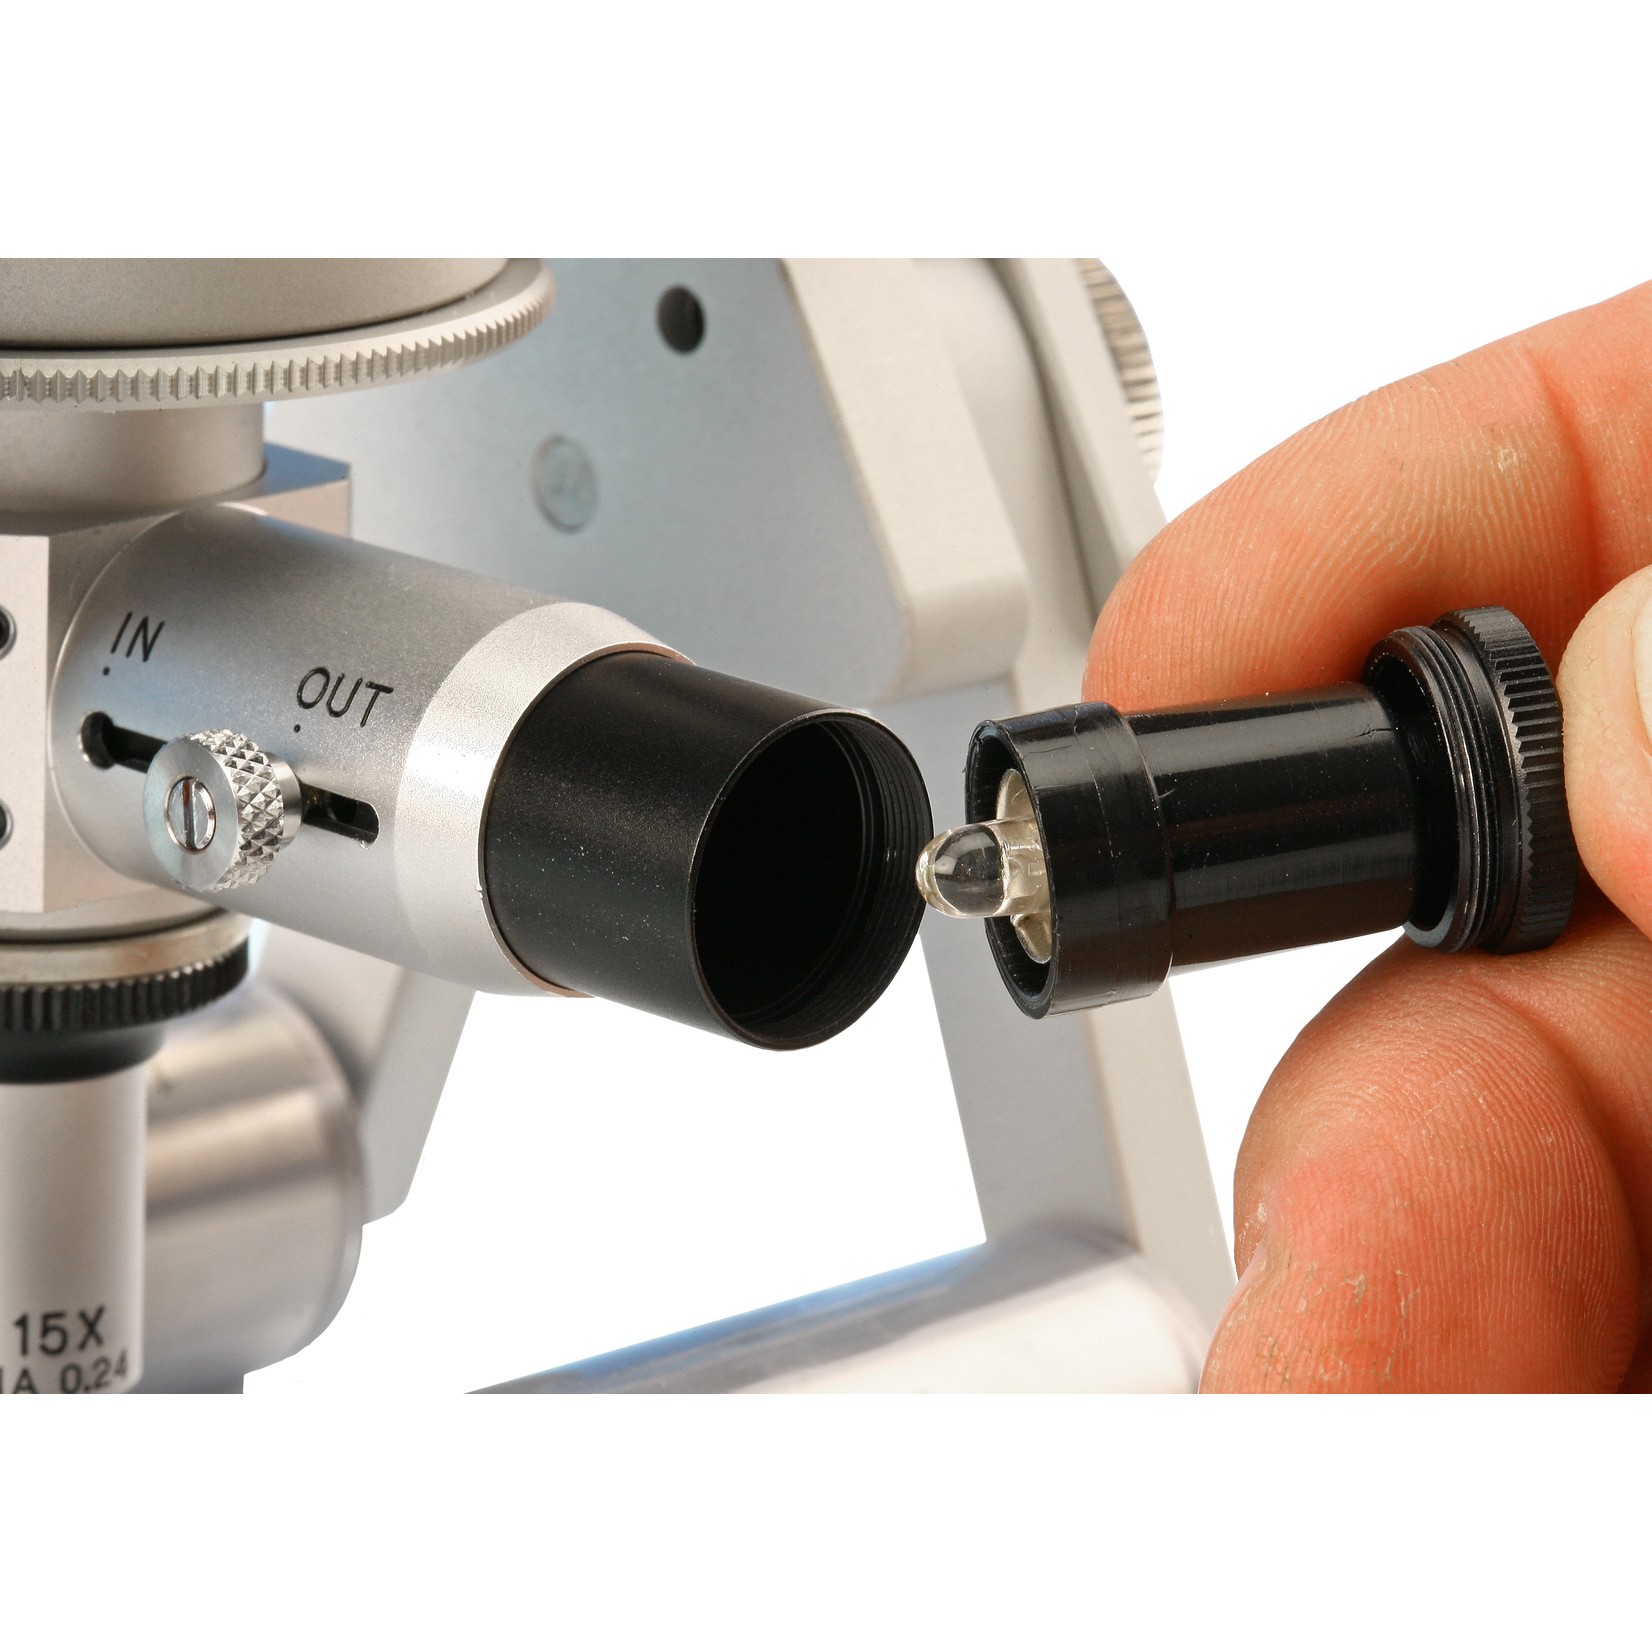 Pièces de rechange pour éclairages coaxiaux microscopes PEAK CIL et Cellcheck-USB